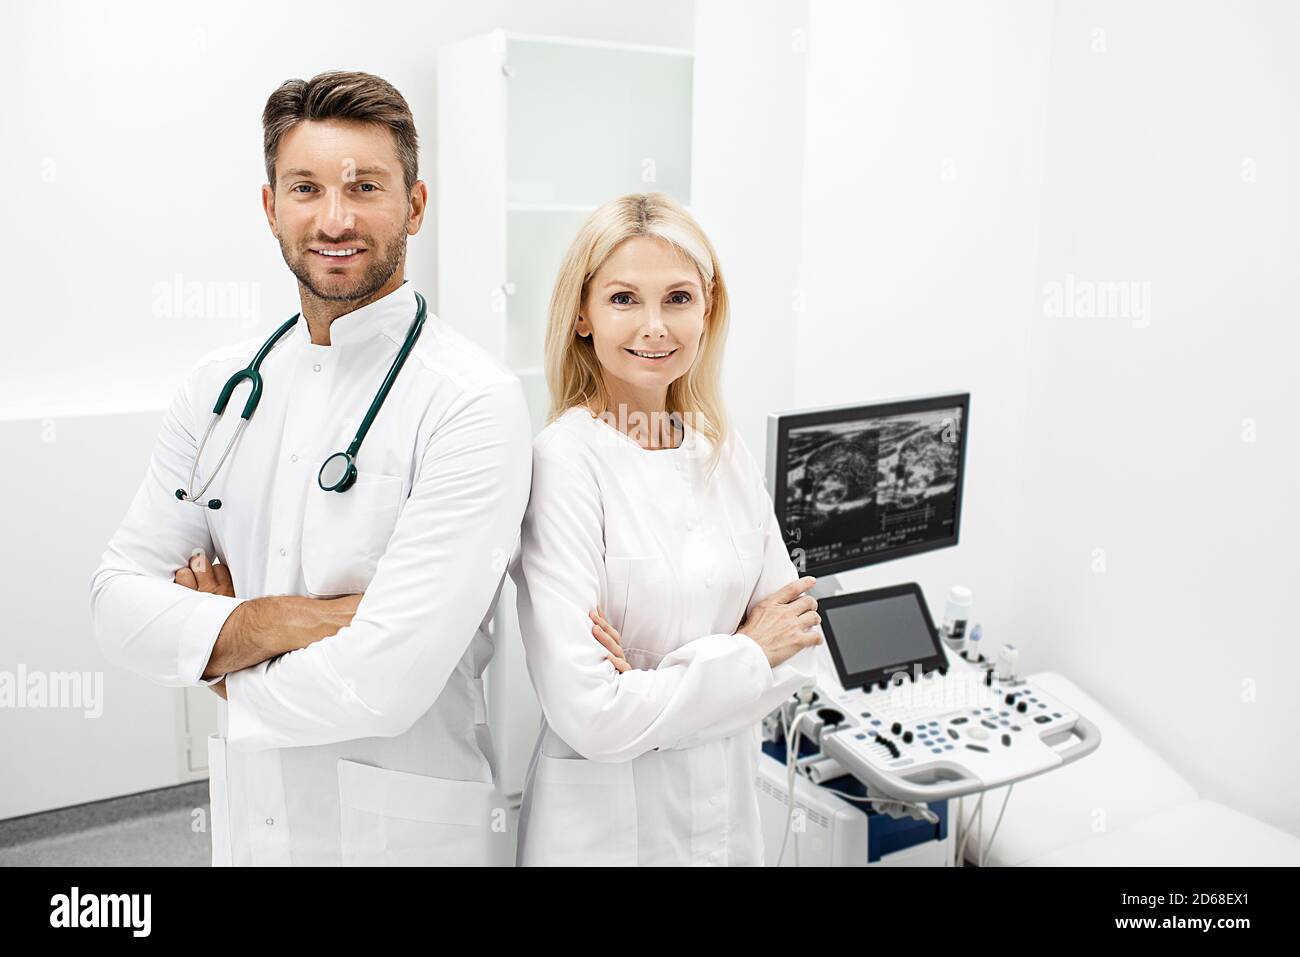 MR et Mme médecins debout dans une clinique moderne. Groupe de médecins, travail d'équipe. Portrait de médecins, personnel médical Banque D'Images